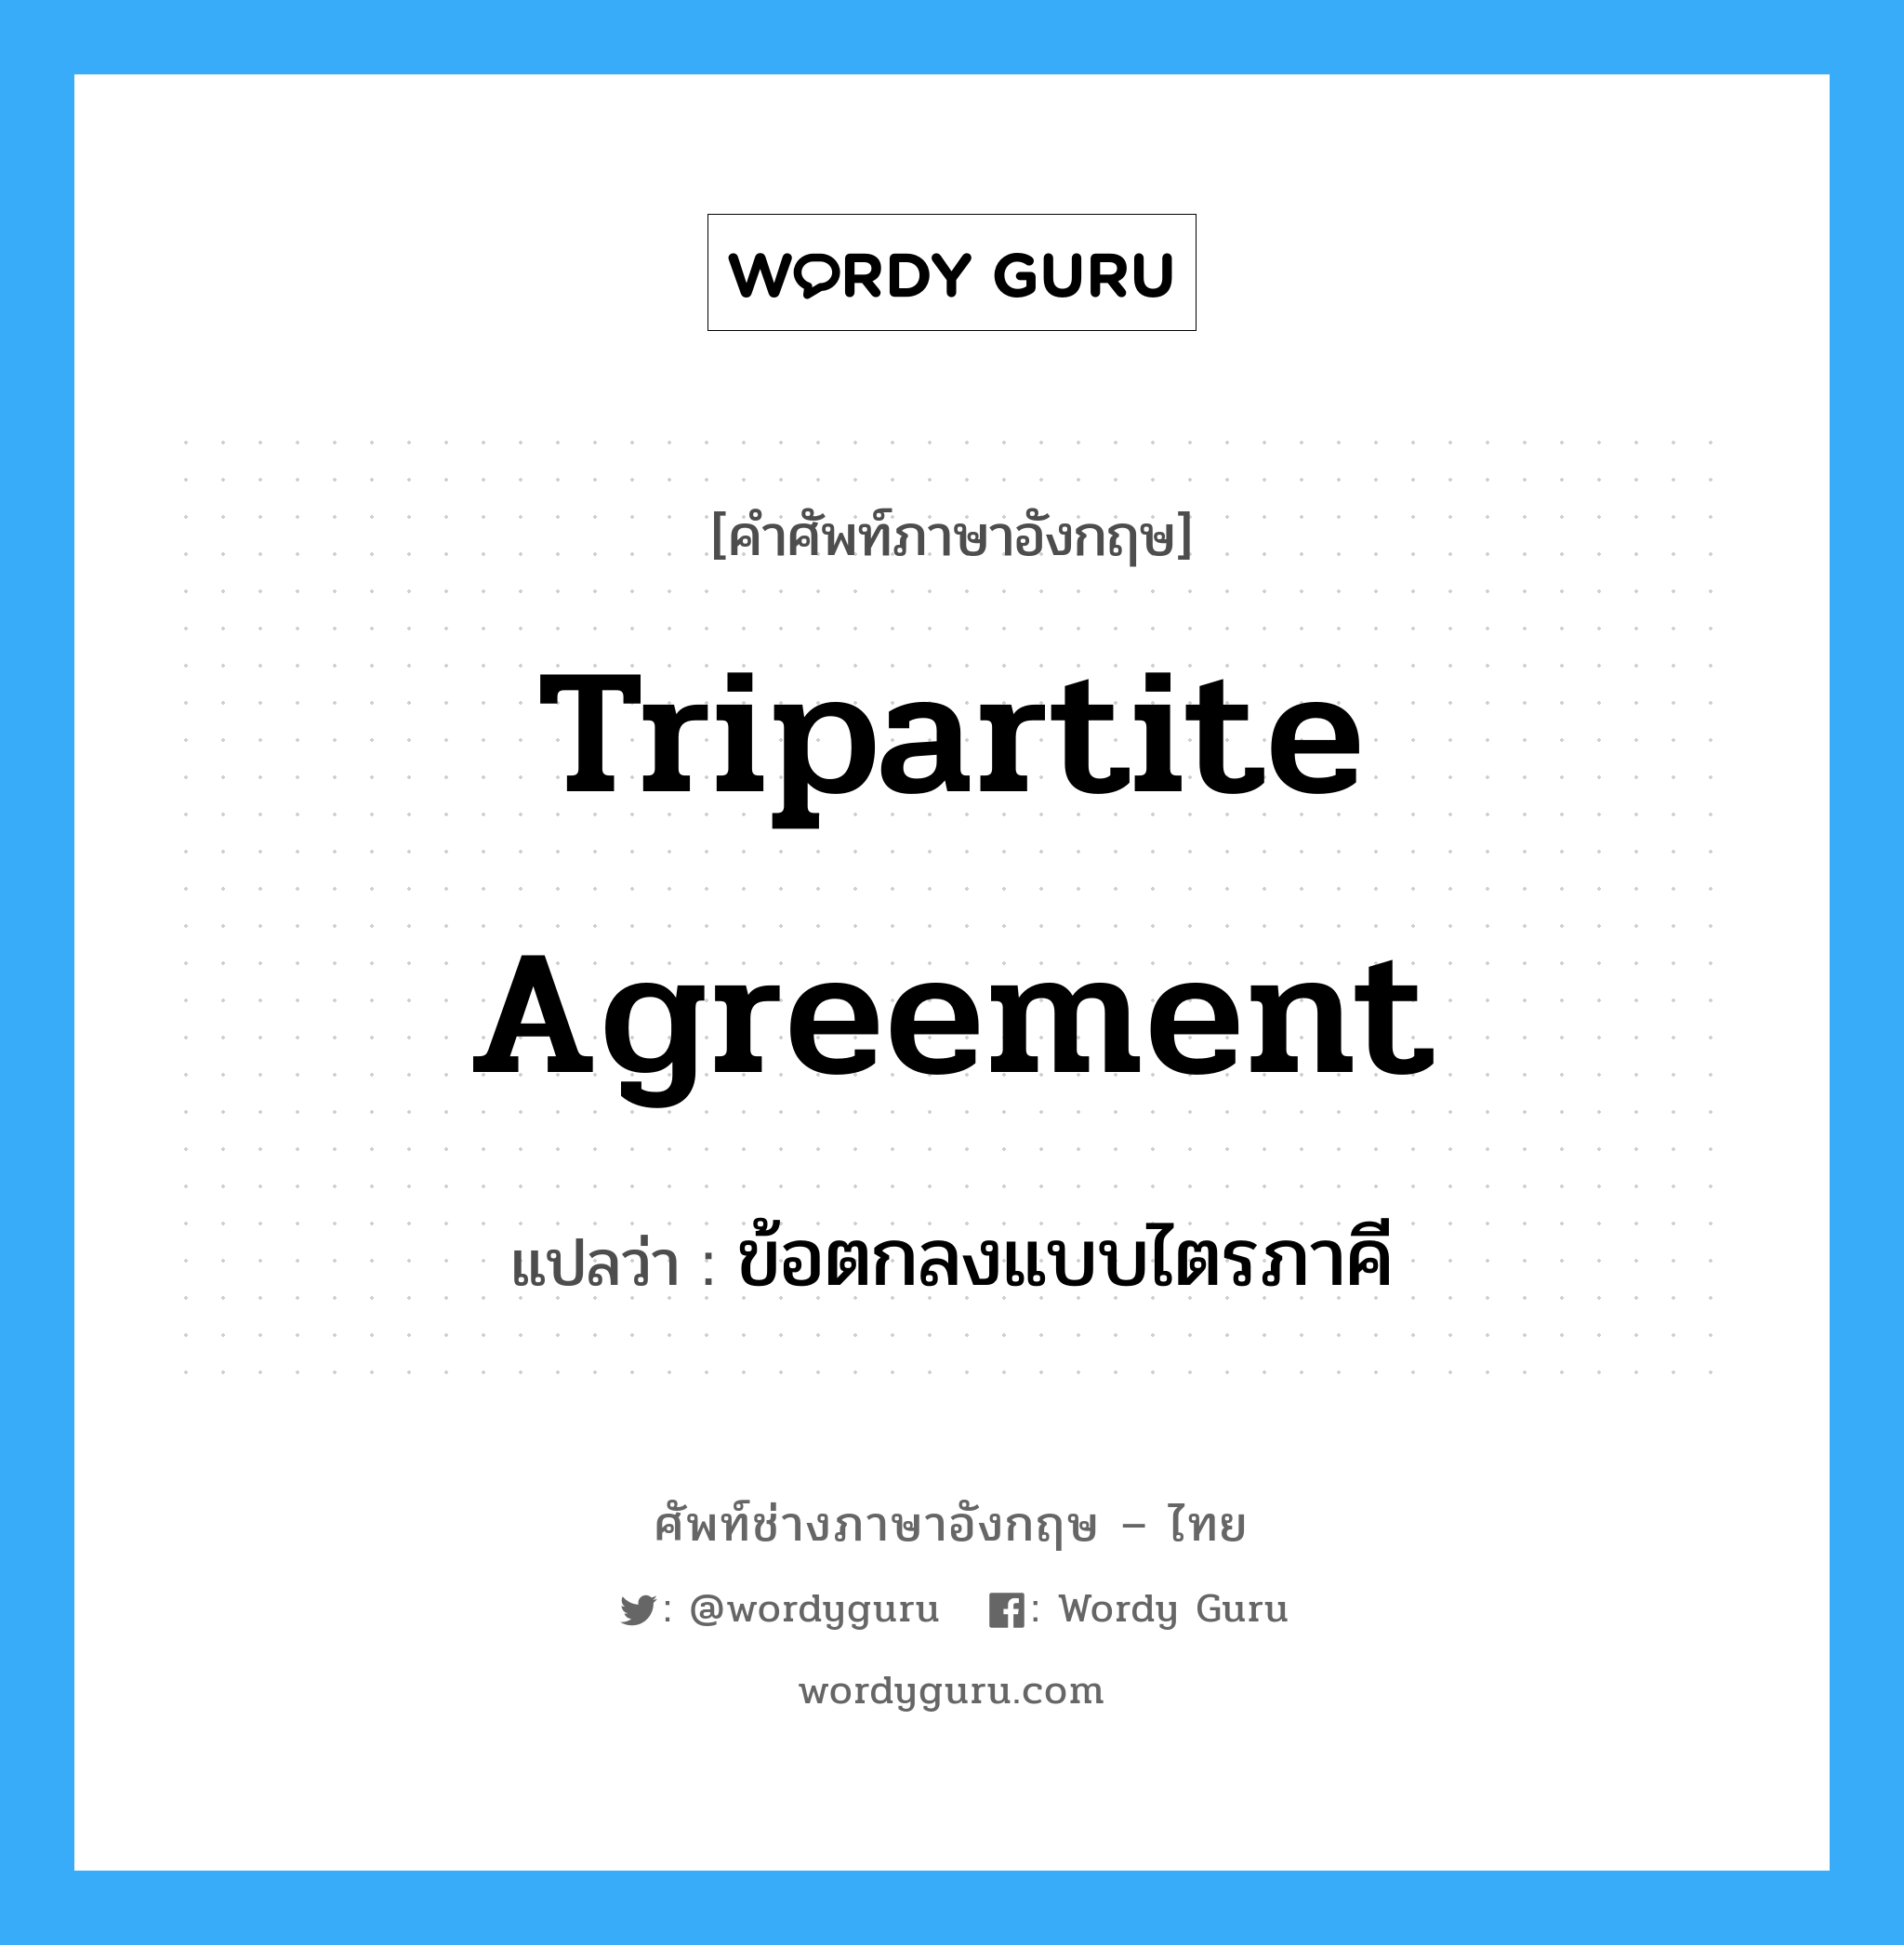 ข้อตกลงแบบไตรภาคี ภาษาอังกฤษ?, คำศัพท์ช่างภาษาอังกฤษ - ไทย ข้อตกลงแบบไตรภาคี คำศัพท์ภาษาอังกฤษ ข้อตกลงแบบไตรภาคี แปลว่า Tripartite Agreement